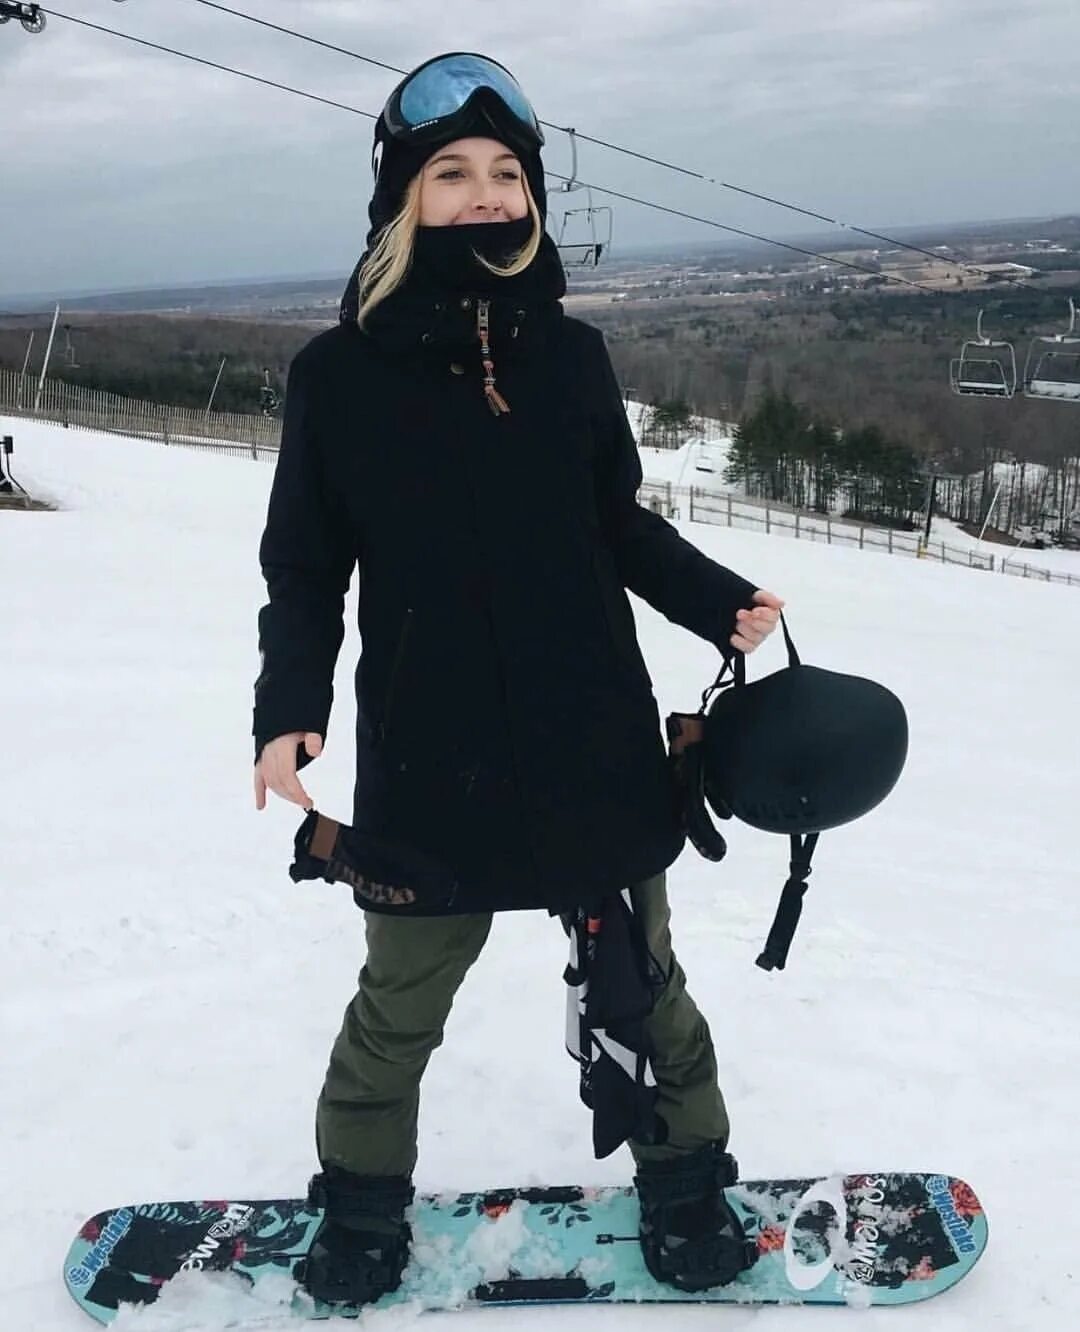 Стильная одежда для сноубордистов. Костюм для катания на сноуборде. Сноубордический костюм девушки. Одежда для сноубордистов. Сноуборд одежда черная